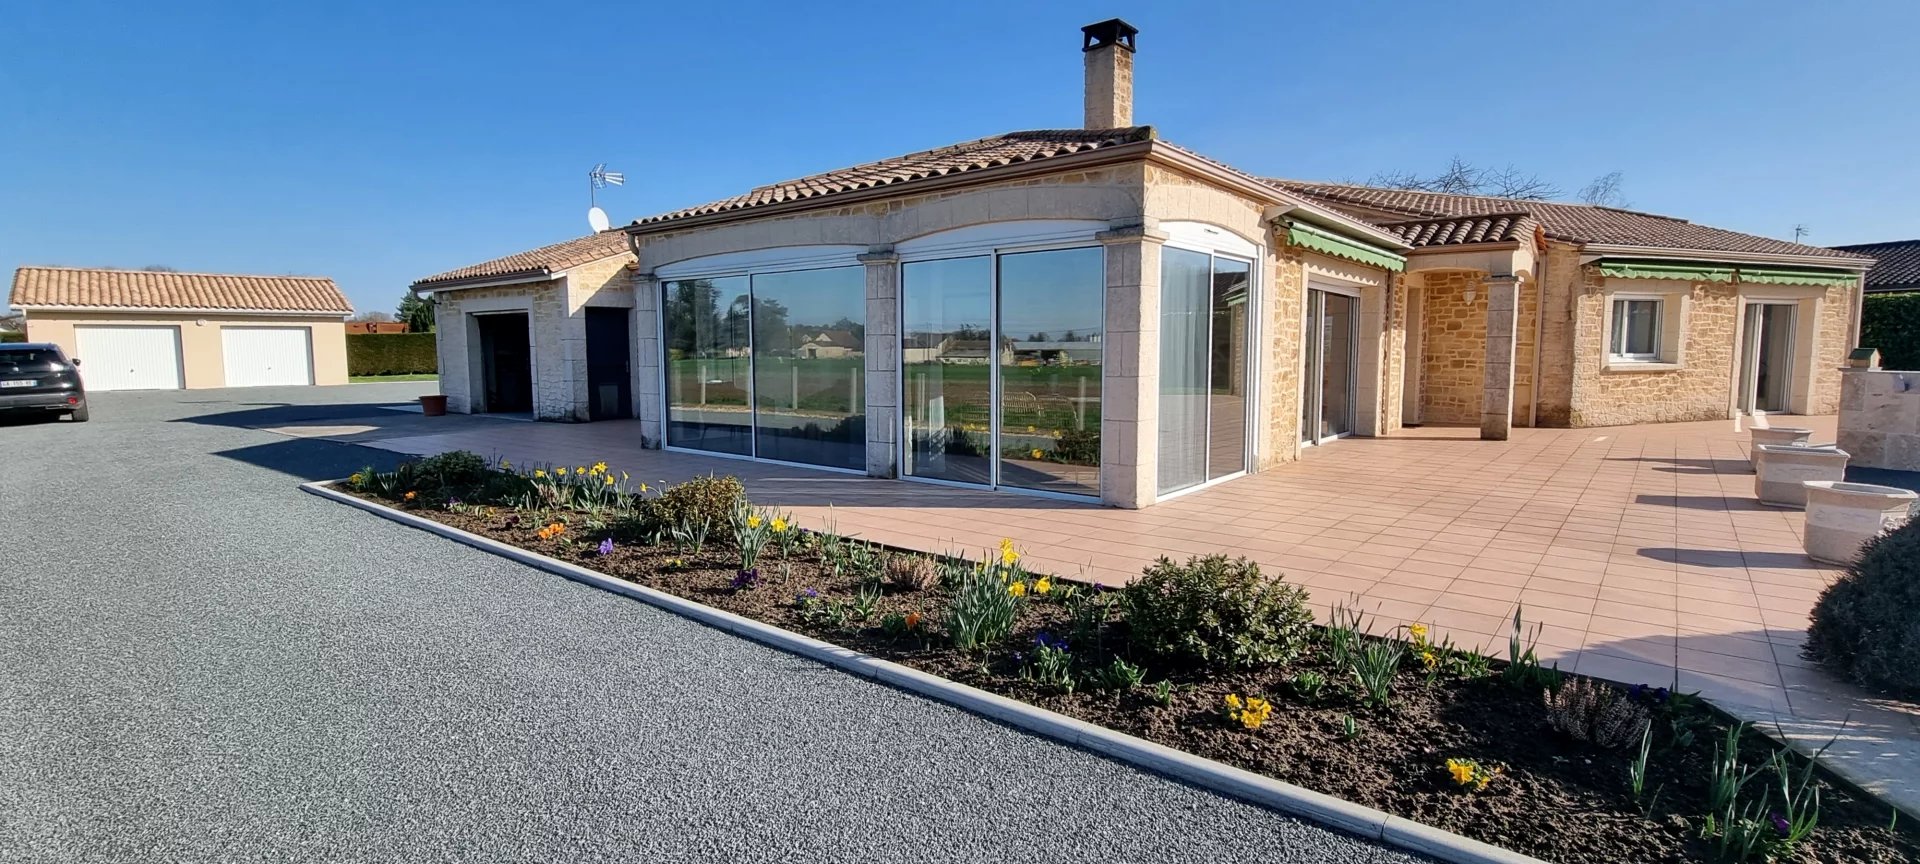 EXCLUSIVITE : Proche bord Dordogne très belle maison plain pied avec Piscine , garage et dépendance double garage sur 3478 m² .